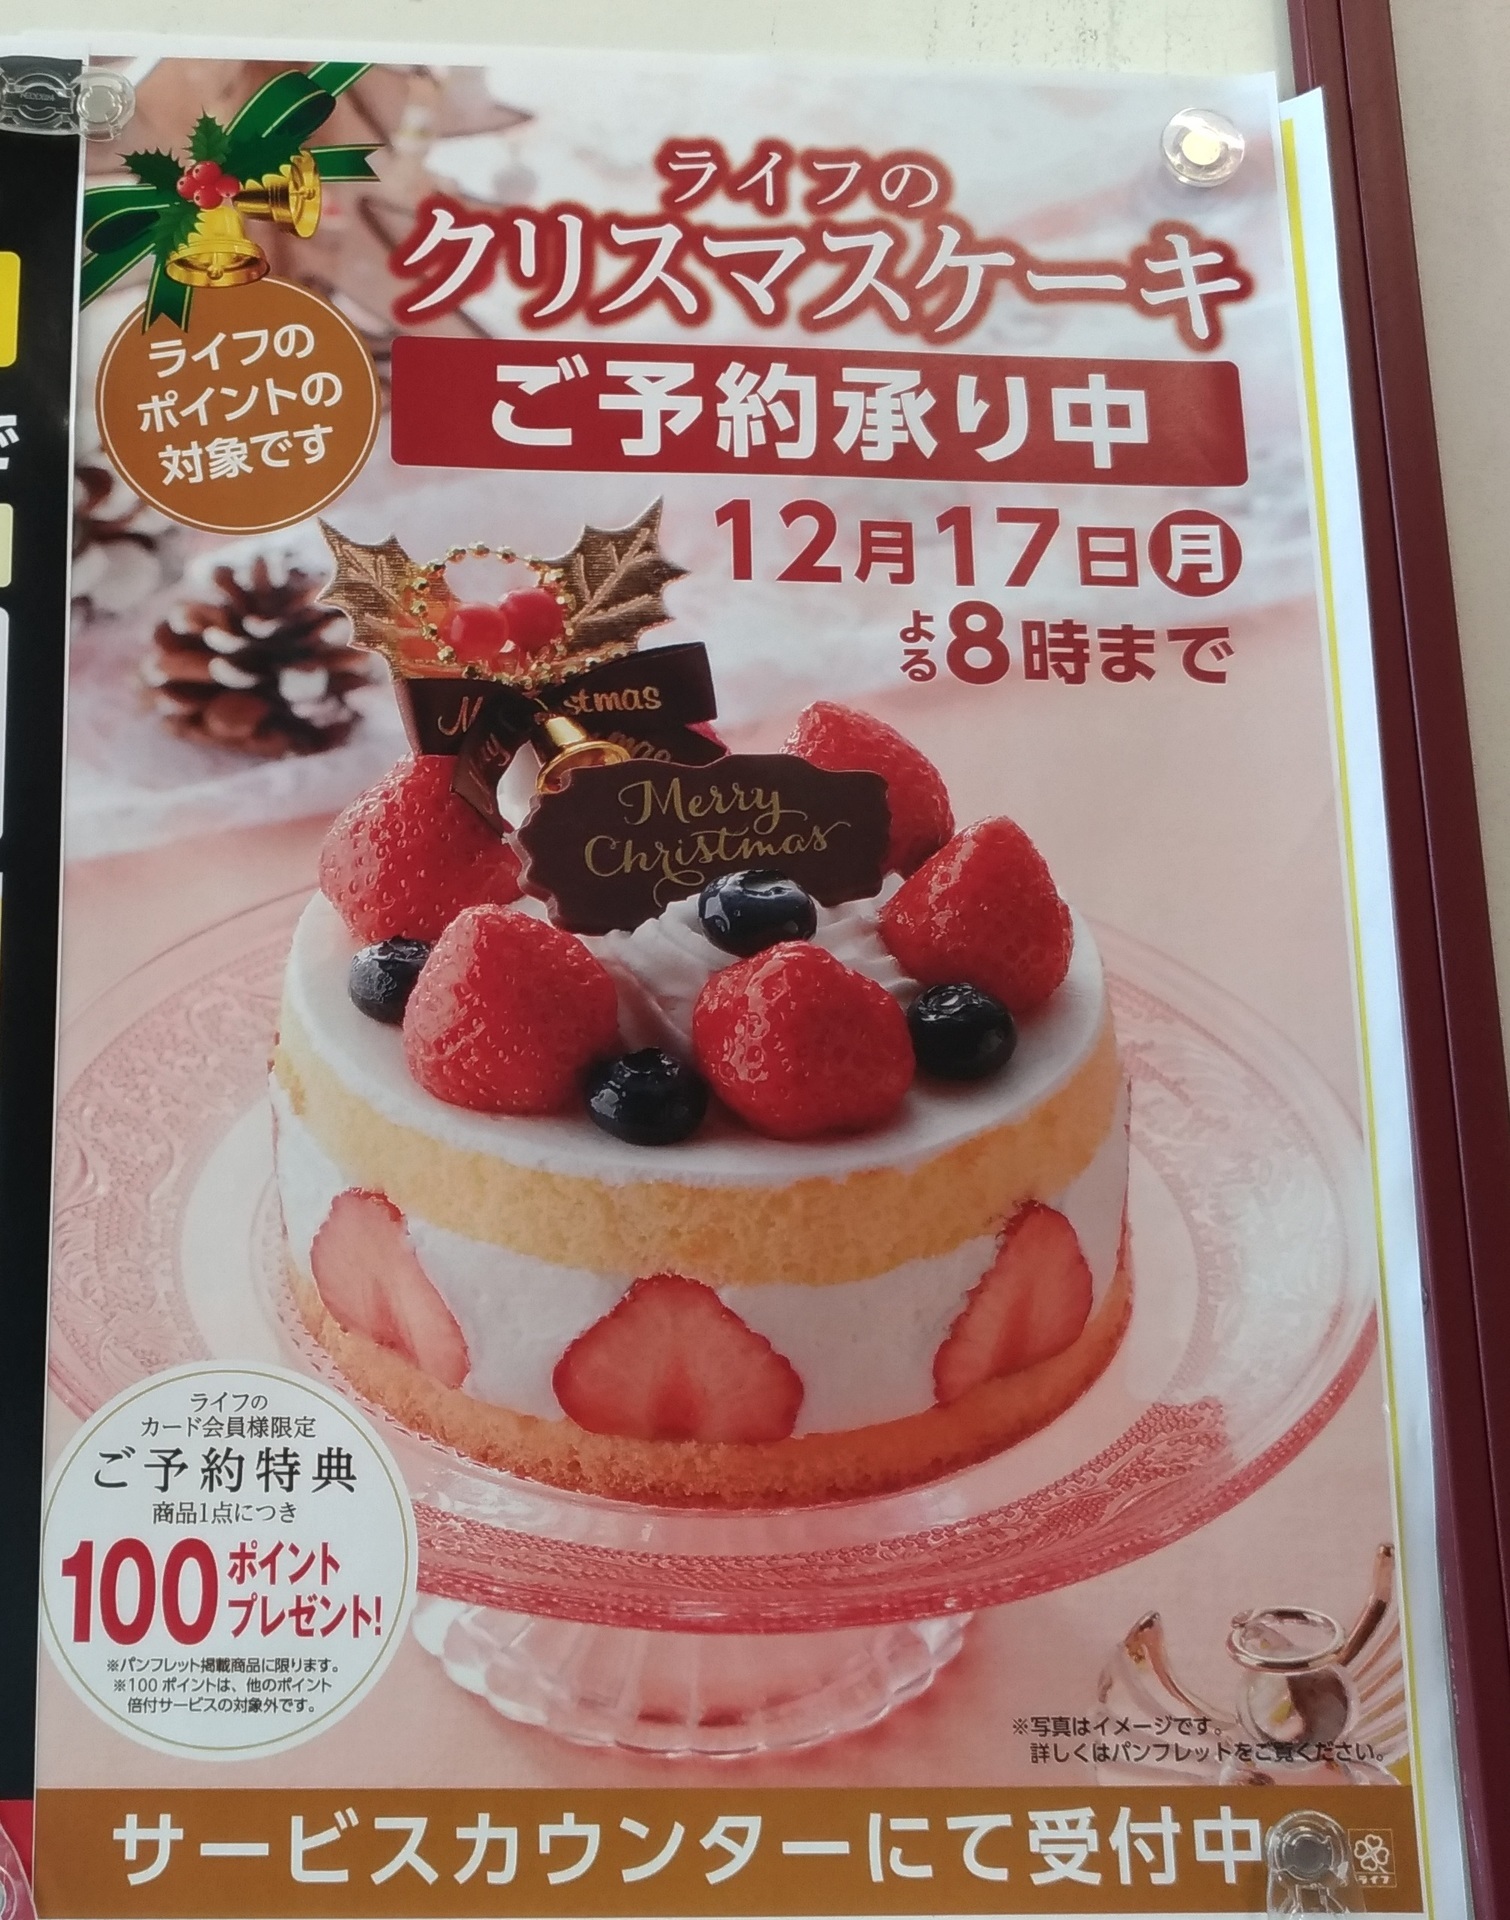 クリスマスケーキ予約18 スーパーライフで予約受け承り中 スーパーライフ 大阪おすすめお惣菜野菜をブログでポイントも